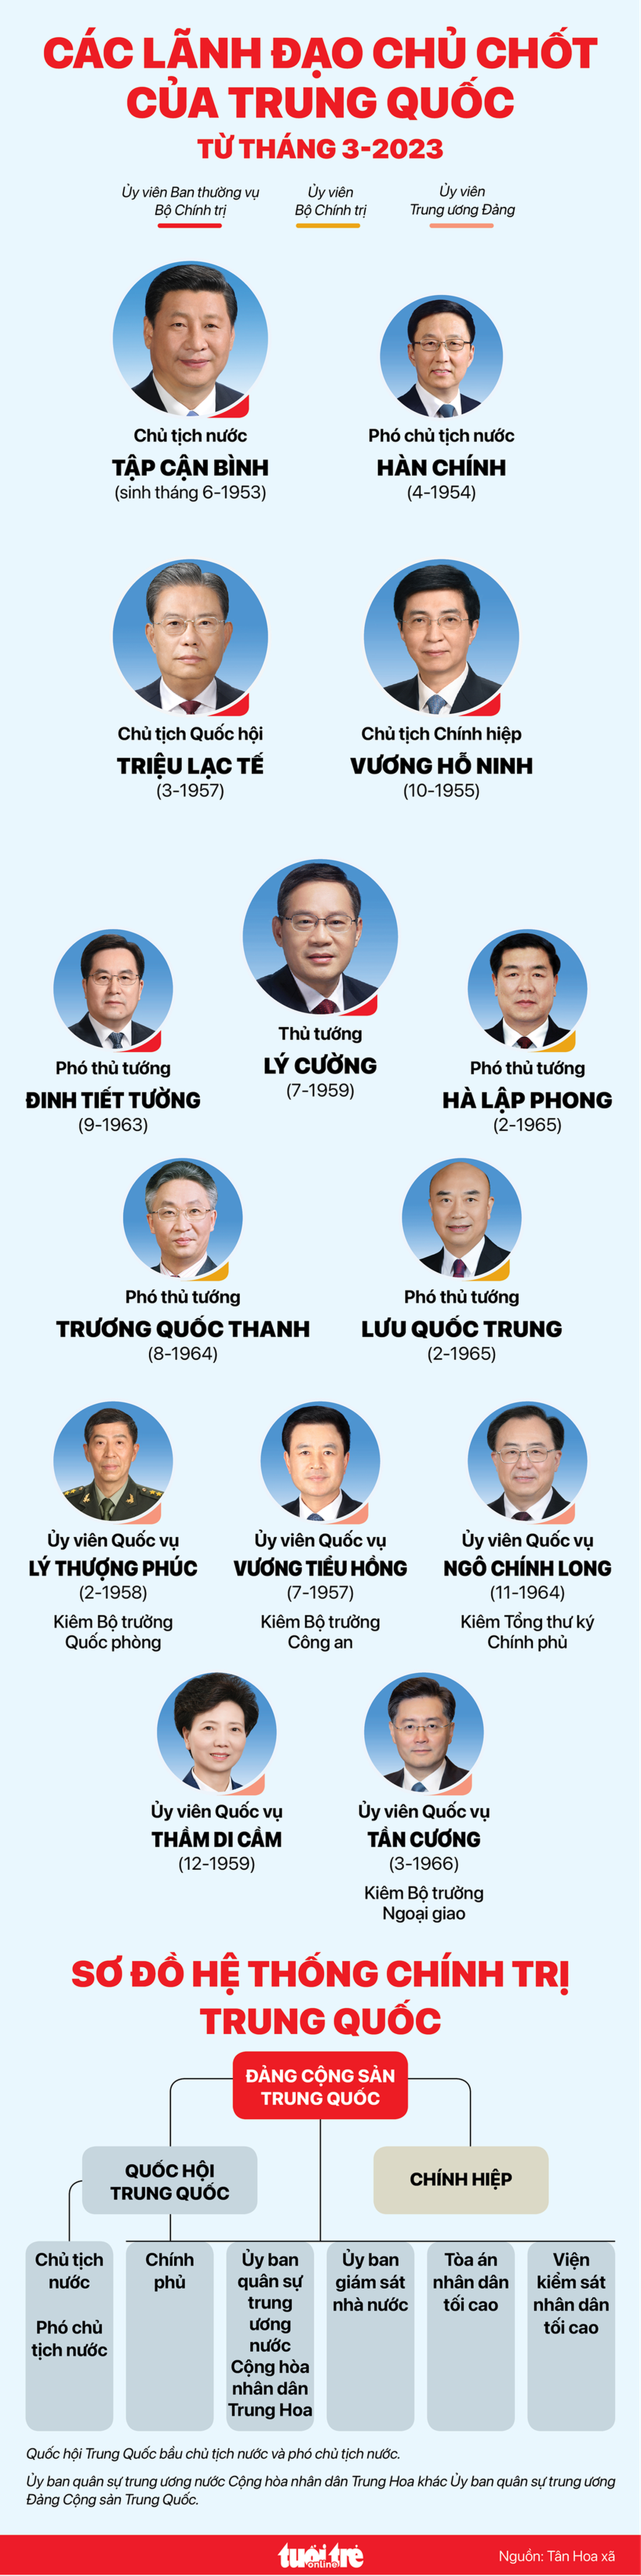 Các lãnh đạo chủ chốt Trung Quốc từ tháng 3-2023 - Ảnh 1.